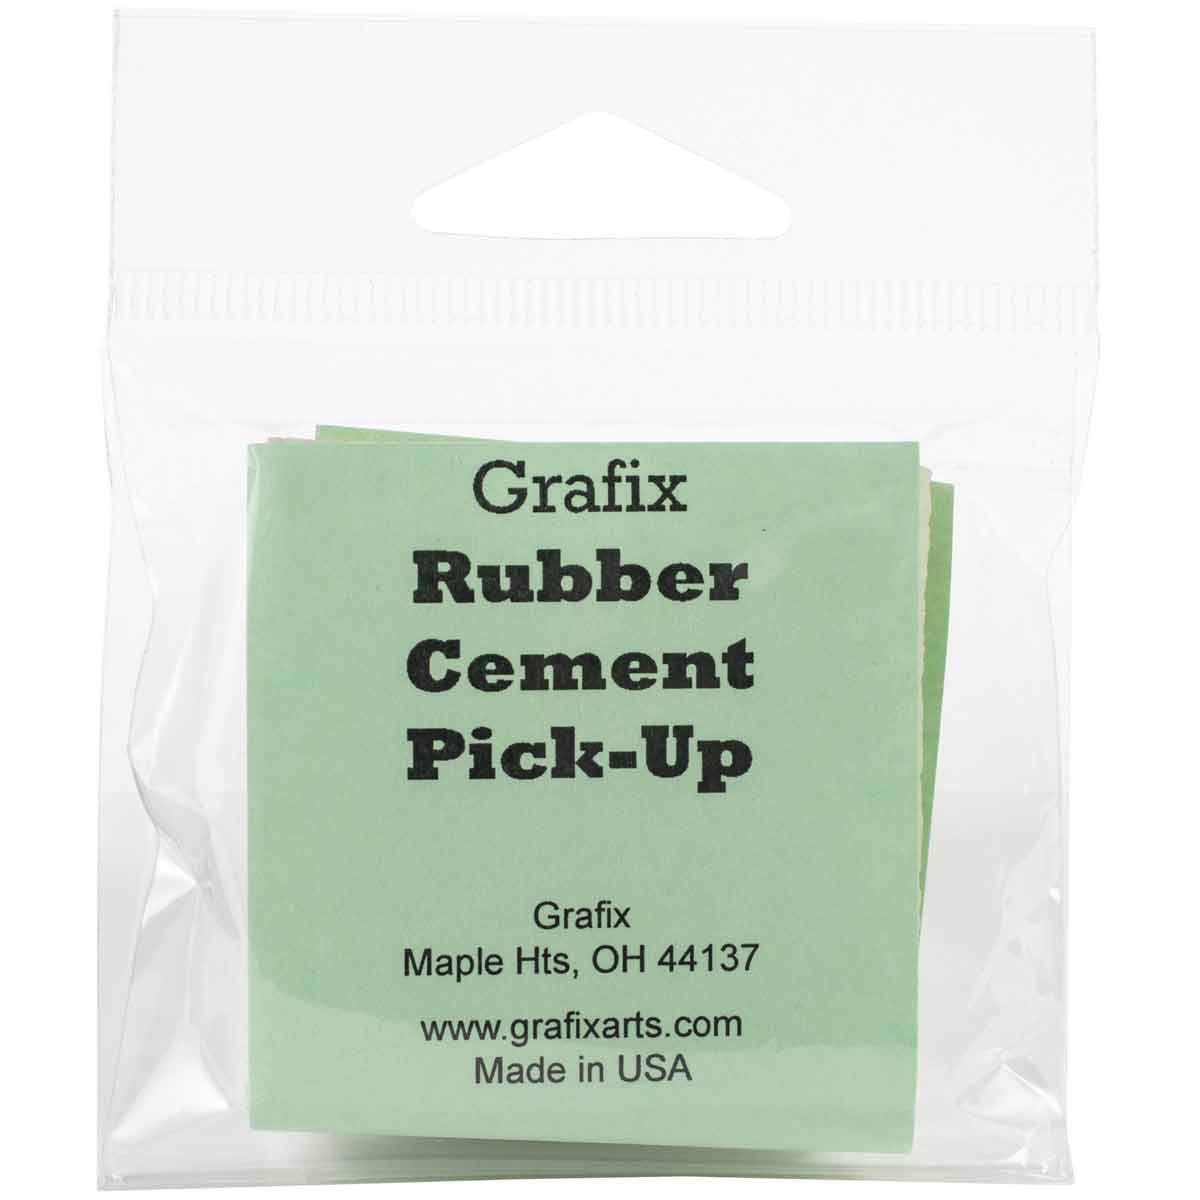 Grafix Rubber Cement Pick-Up